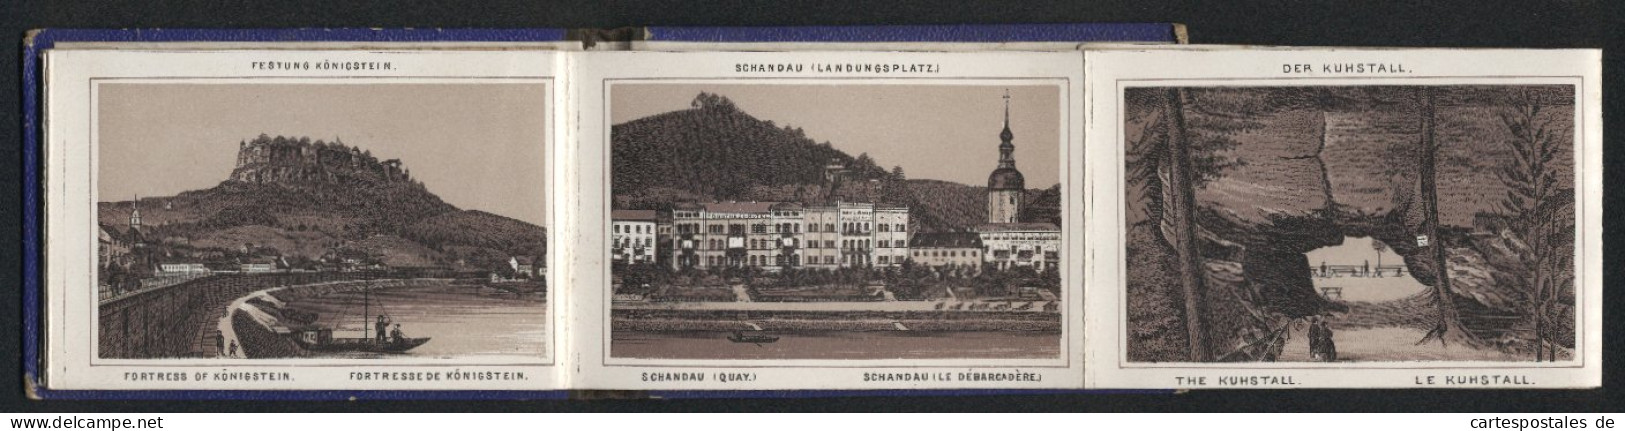 Leporello-Album Sächs. Schweiz Mit 14 Lithographie-Ansichten, Gasthaus Grosser Winterberg, Schandau, Bastei, Amselfall  - Lithografieën